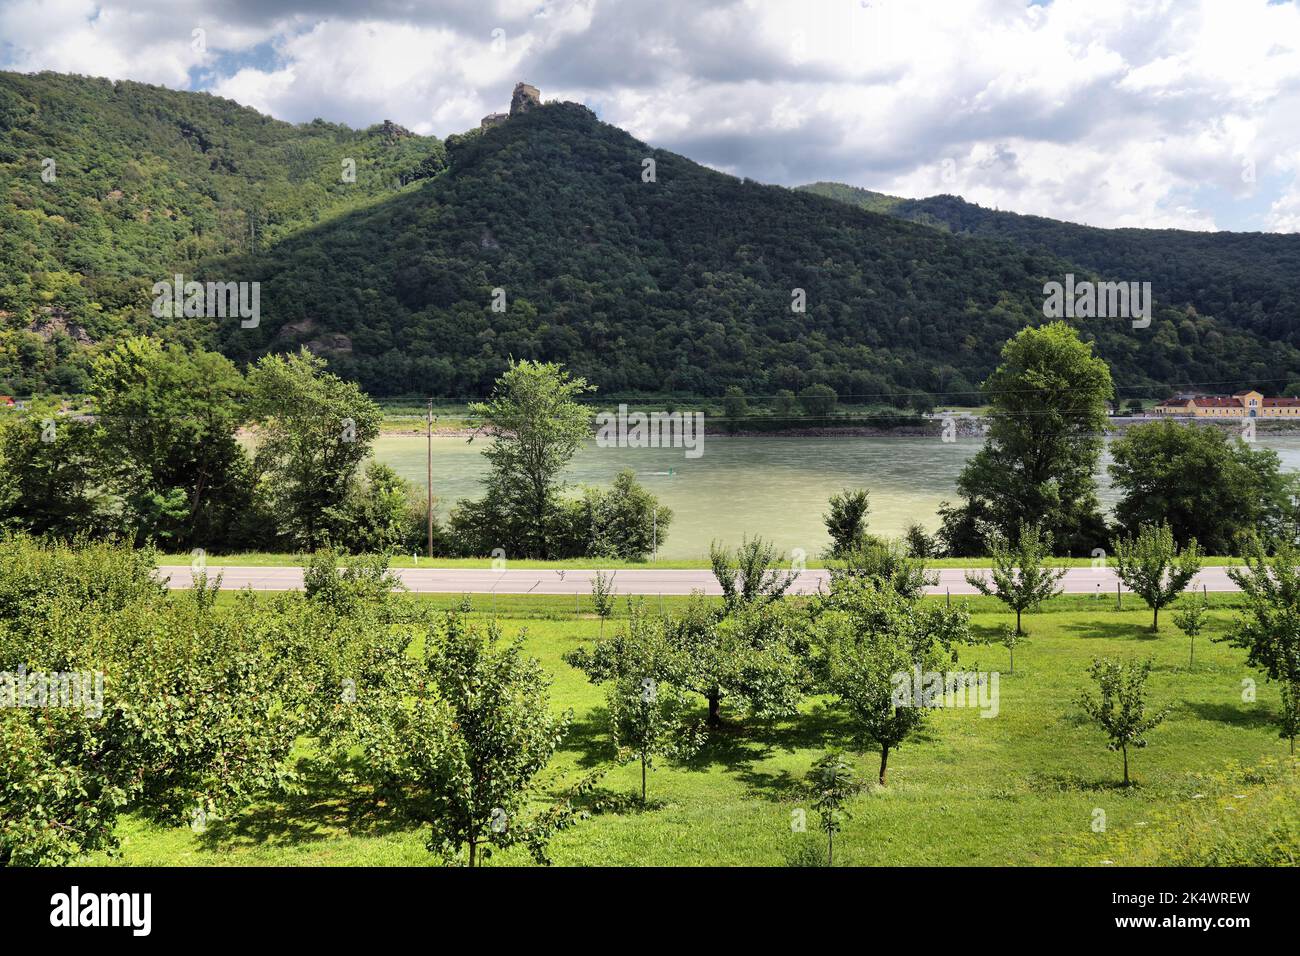 Paesaggio austriaco nella regione di Wachau. Campagna meleti nella valle del Danubio. Rovine del castello di Aggstein sullo sfondo. Foto Stock